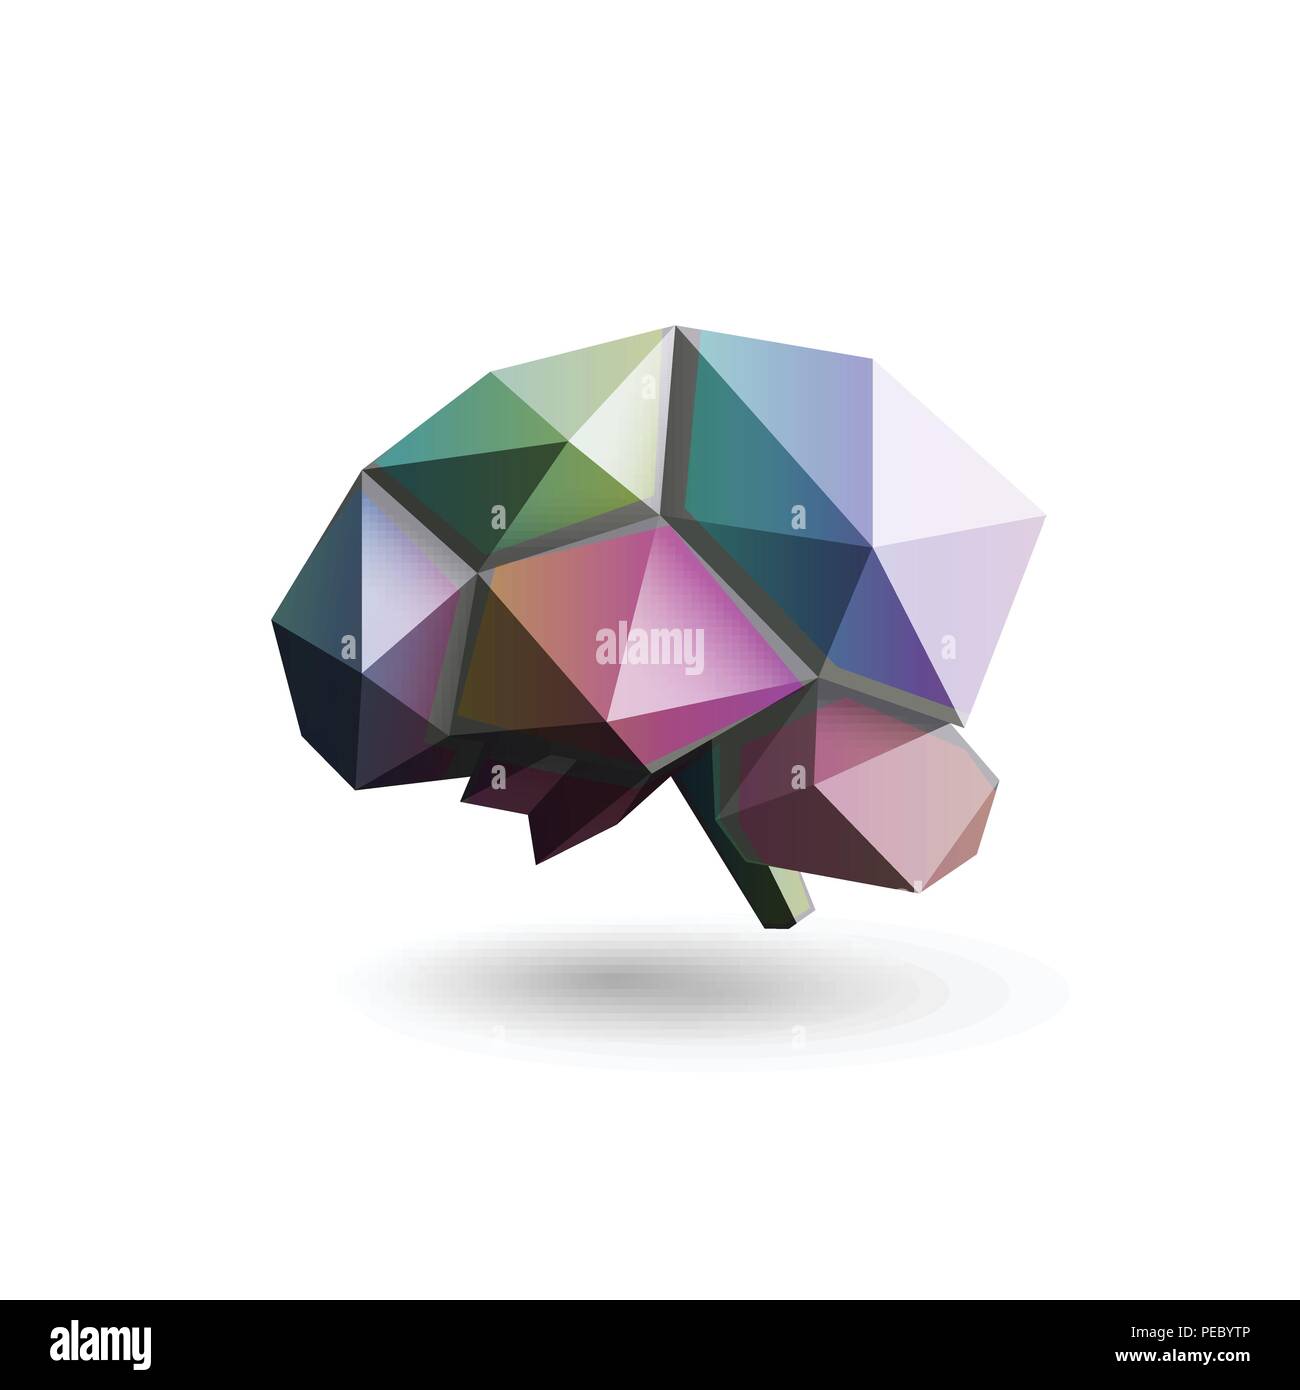 Farbige Gehirn, polygonalen Design, Vektor, Abbildung. Wissenschaft Forschung und Entwicklung Labor logo Vorlage. Gehirn lernen, Brain Storming moderne Symbol. Stock Vektor